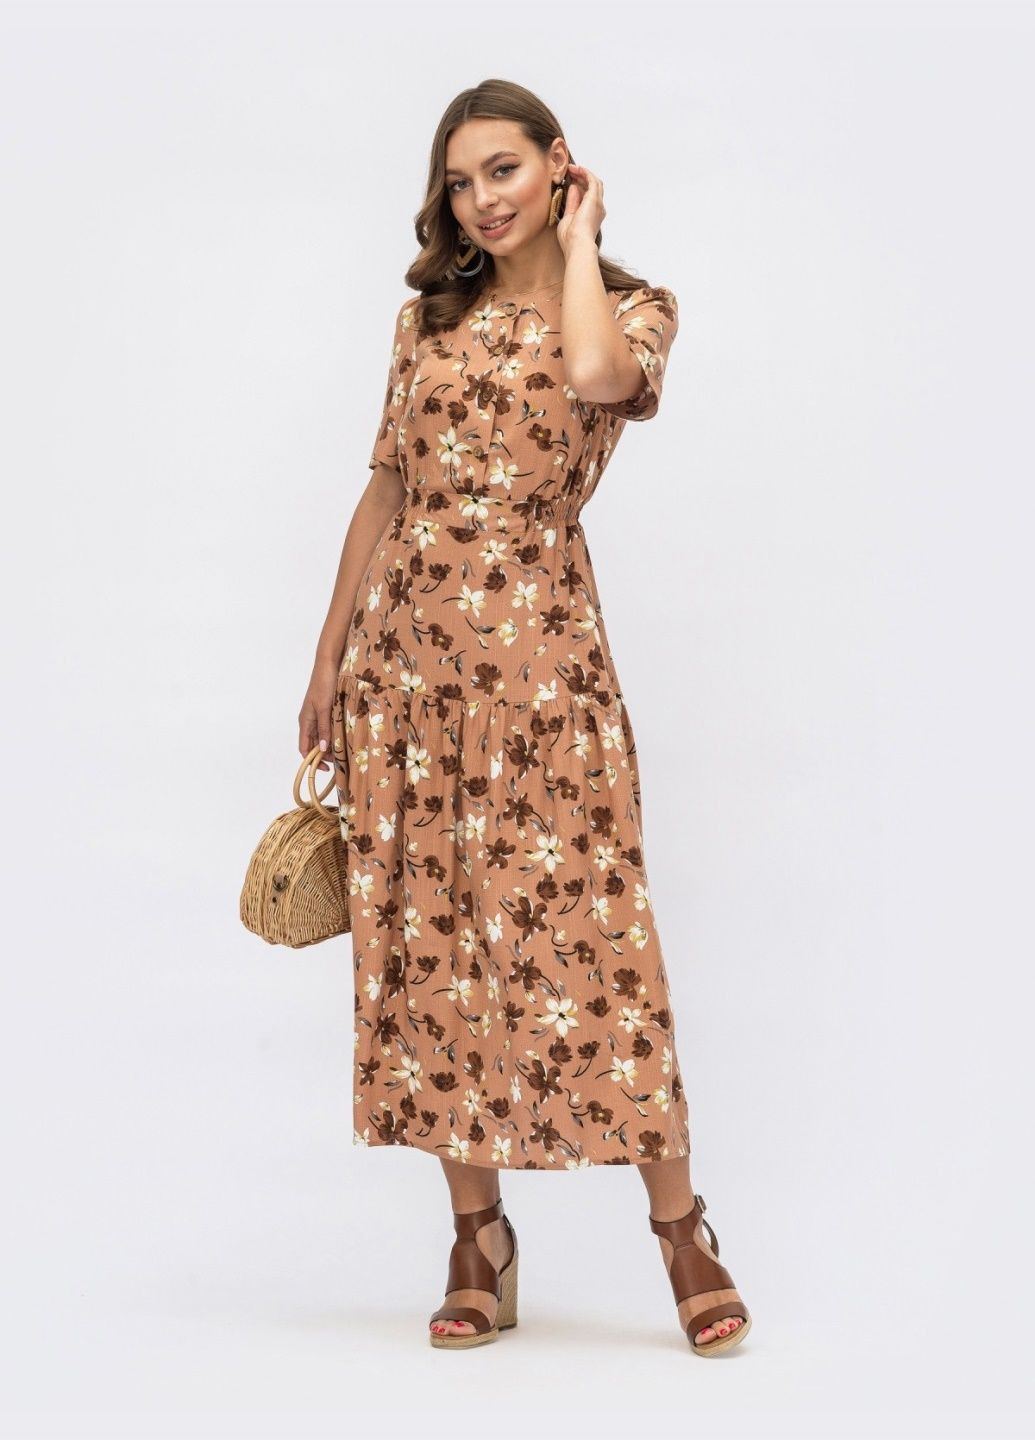 Коричневое расклешенное платье-миди с цветочным принтом коричневое Dressa